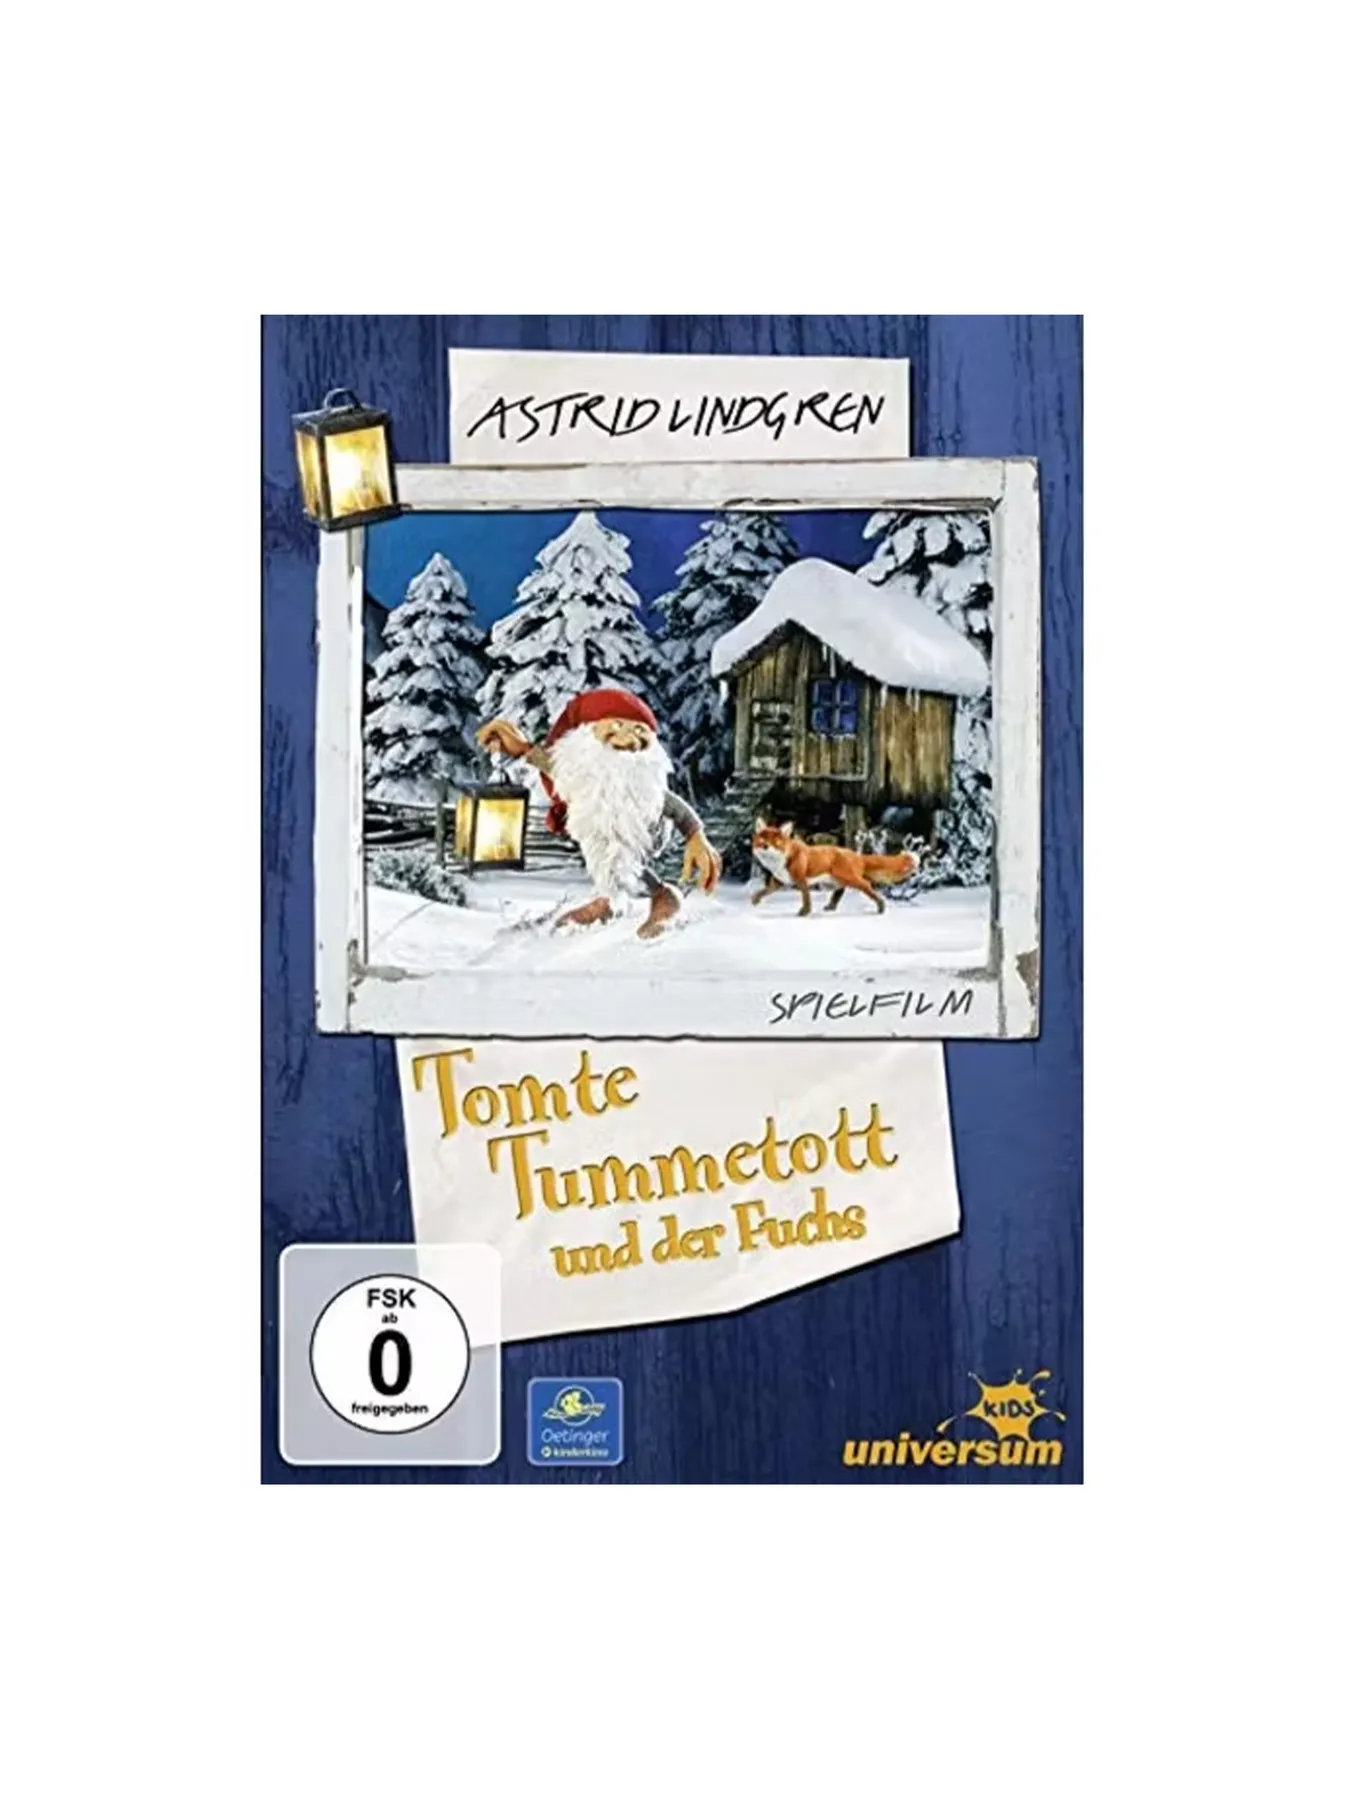 Tomte Tummetott und der Fuchs (German)